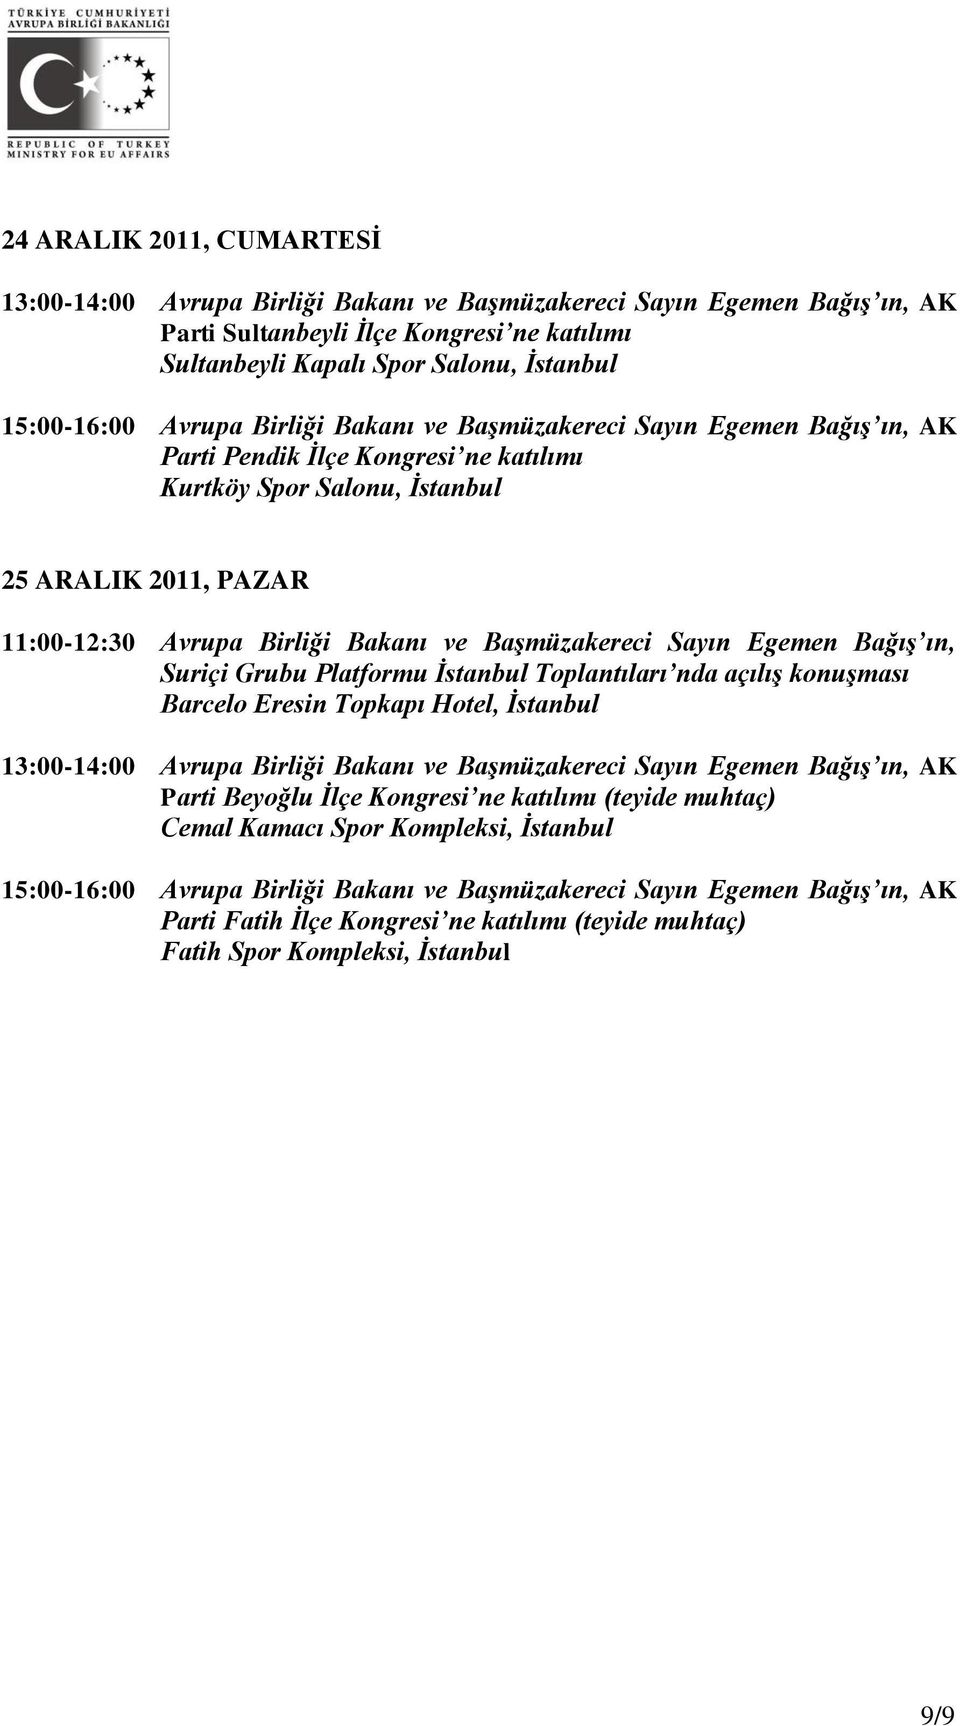 Başmüzakereci Sayın Egemen Bağış ın, Suriçi Grubu Platformu İstanbul Toplantıları nda açılış konuşması Barcelo Eresin Topkapı Hotel, İstanbul 13:00-14:00 Avrupa Birliği Bakanı ve Başmüzakereci Sayın